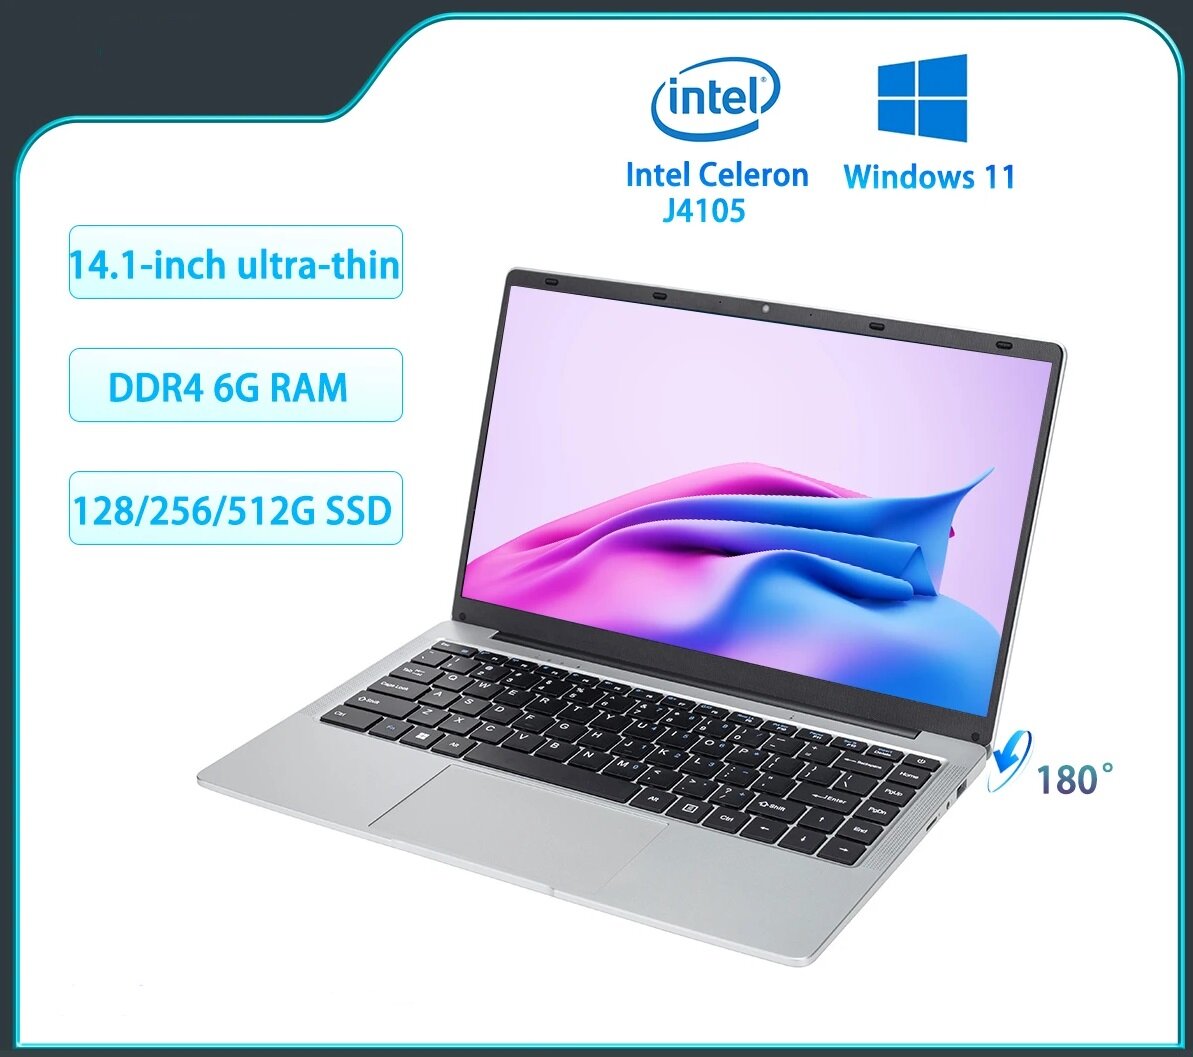 Ультратонкий ноутбук 14,1" FHD IPS дисплей, Intel Celeron J4105 (4х2,5 Ггц), DDR4-8 ГБ (6 Гб), SSD 256 Гб, Windows 11, Серебристый + мышь + коврик